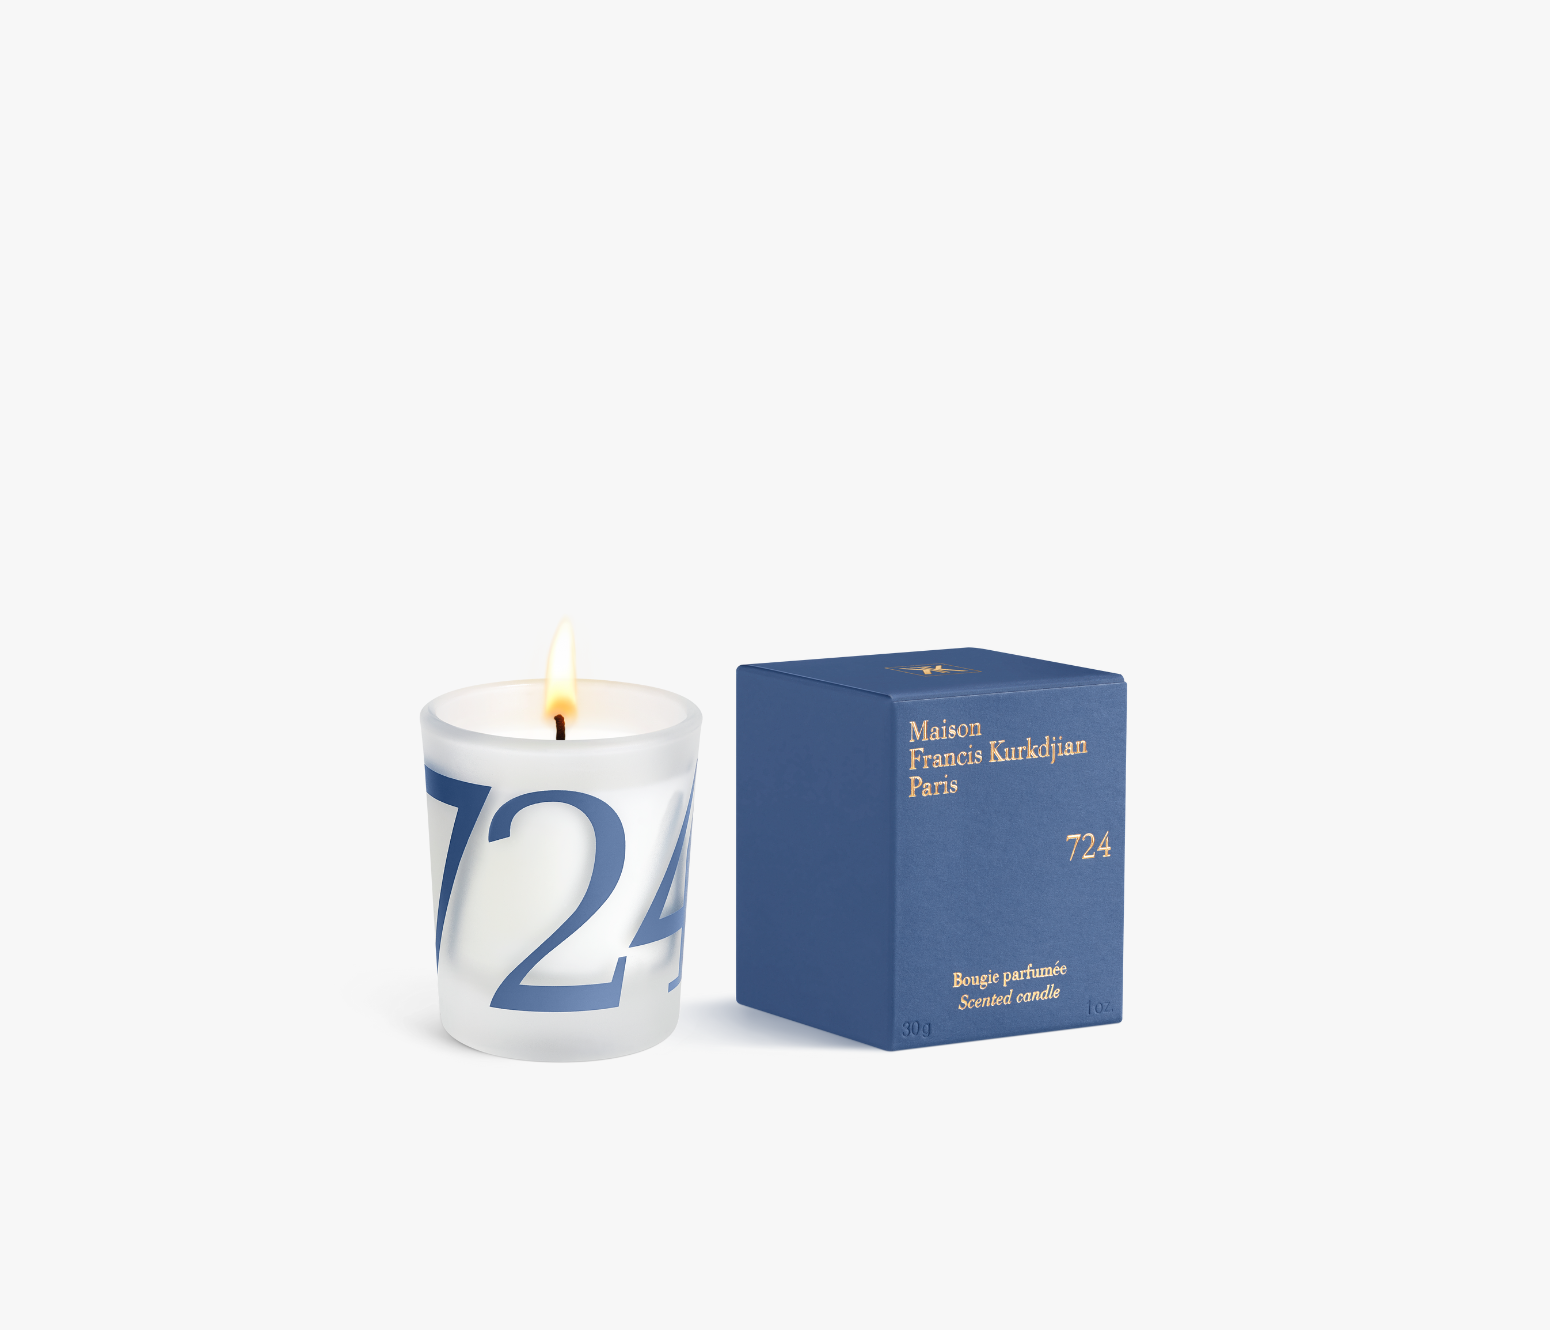 Maison Francis Kurkdjian 724 Mini Candle Gift